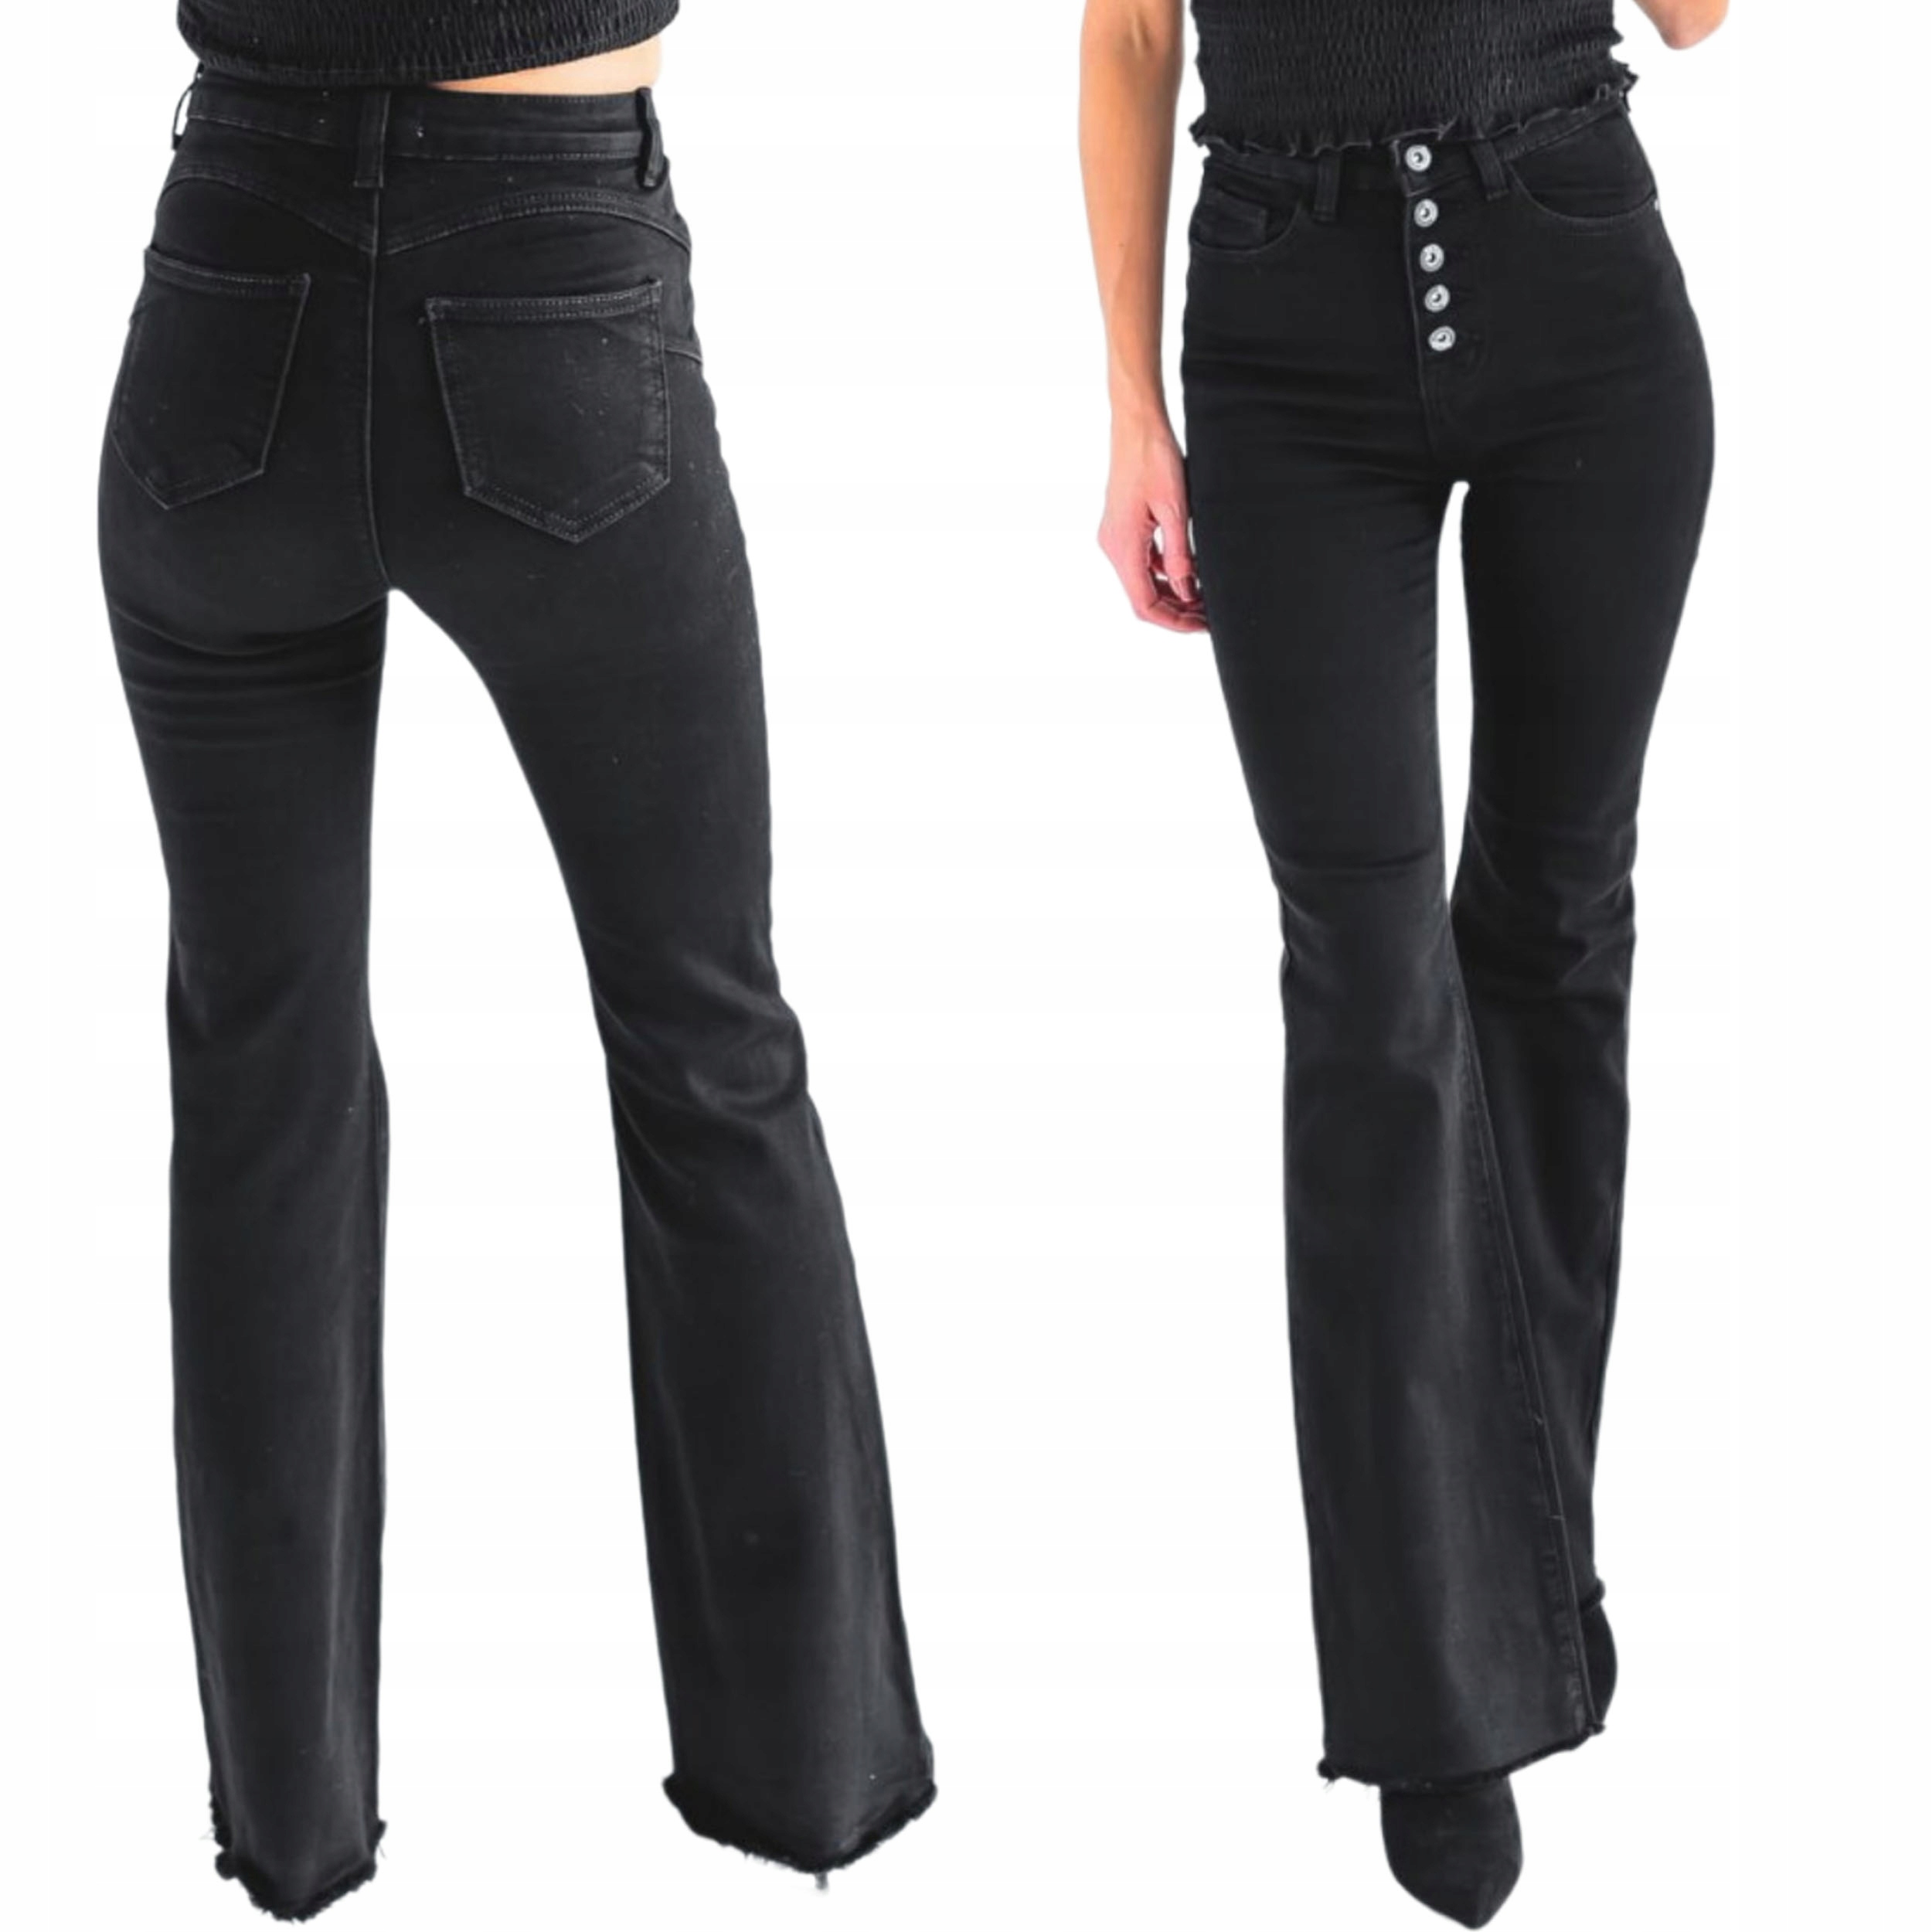 Czarne damskie spodnie dzwony jeans PUSH UP wysoki stan szeroka nogawka S